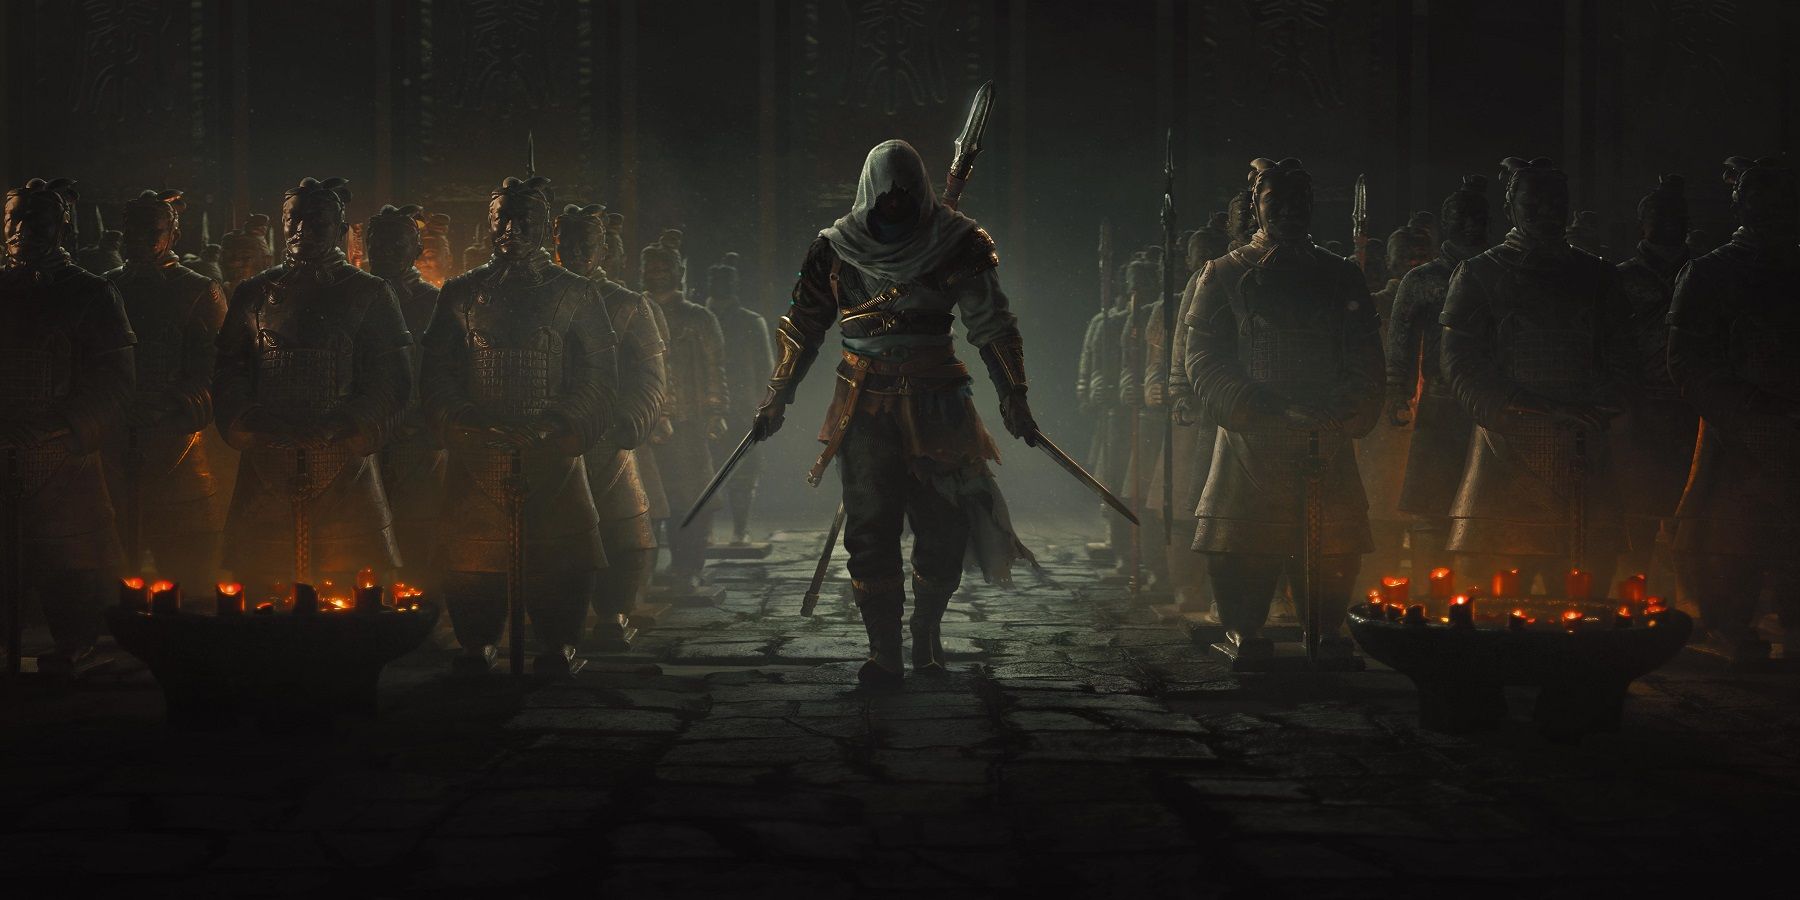 Assassin's Creed 2's Sanctuary presenta un vínculo sutil con el próximo Assassin's Creed Codename Jade.